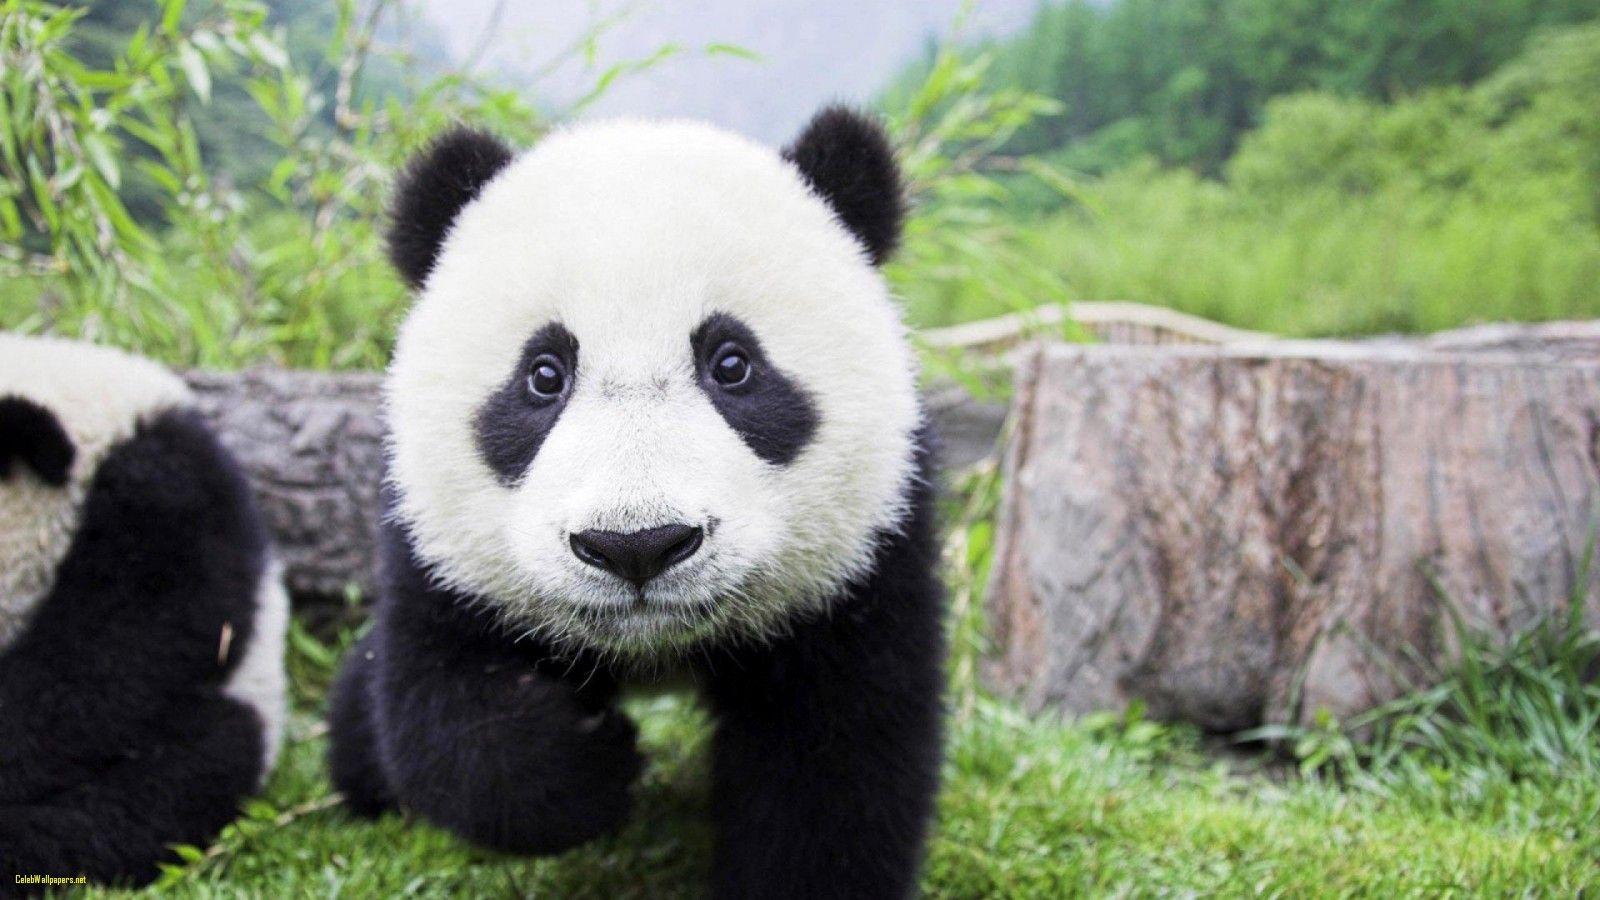 Cute Panda Picture Beautiful Cute Baby Panda Wallpaper